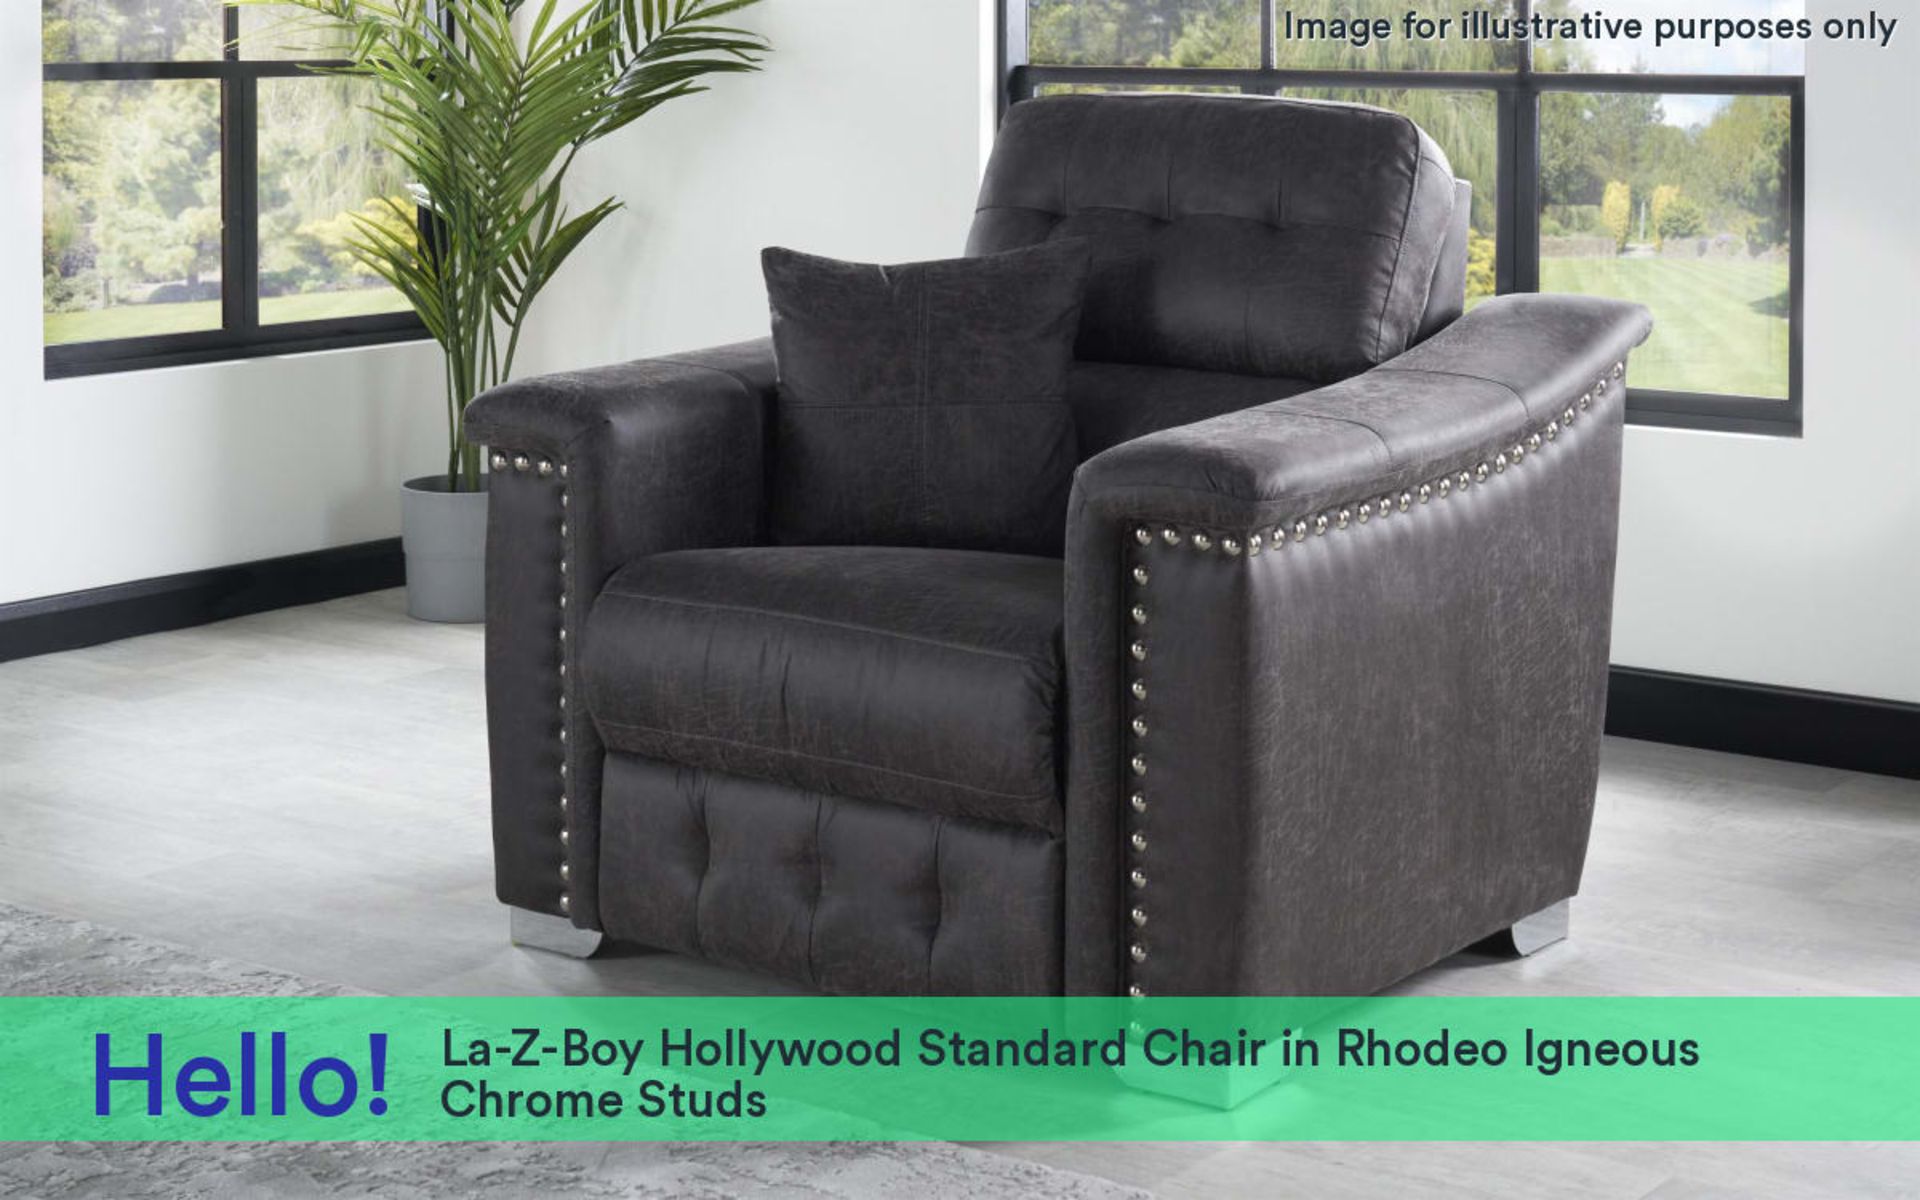 La-Z-Boy Hollywood Standard Chair Rhodeo Igneous Chrome Studs RRP 1000La-Z-Boy Hollywood Standard